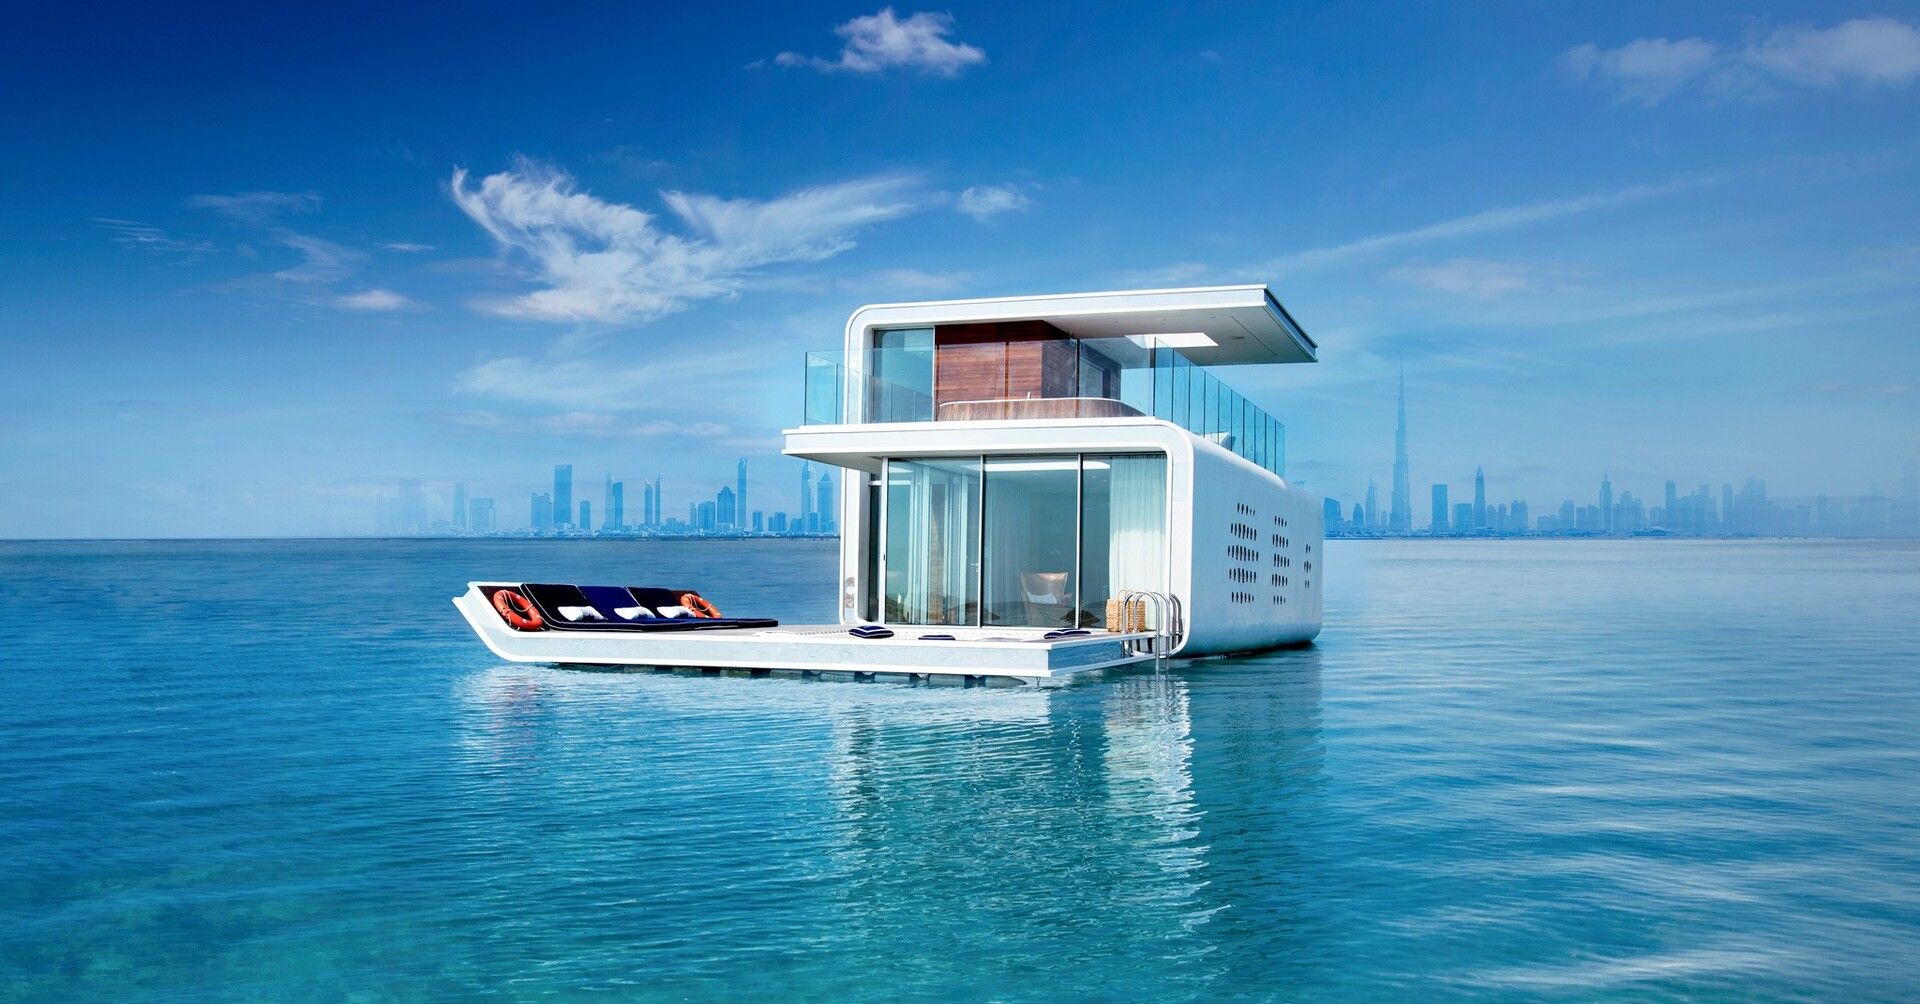 Vendita Villa Lusso Mare Dubai | luxforsale.it